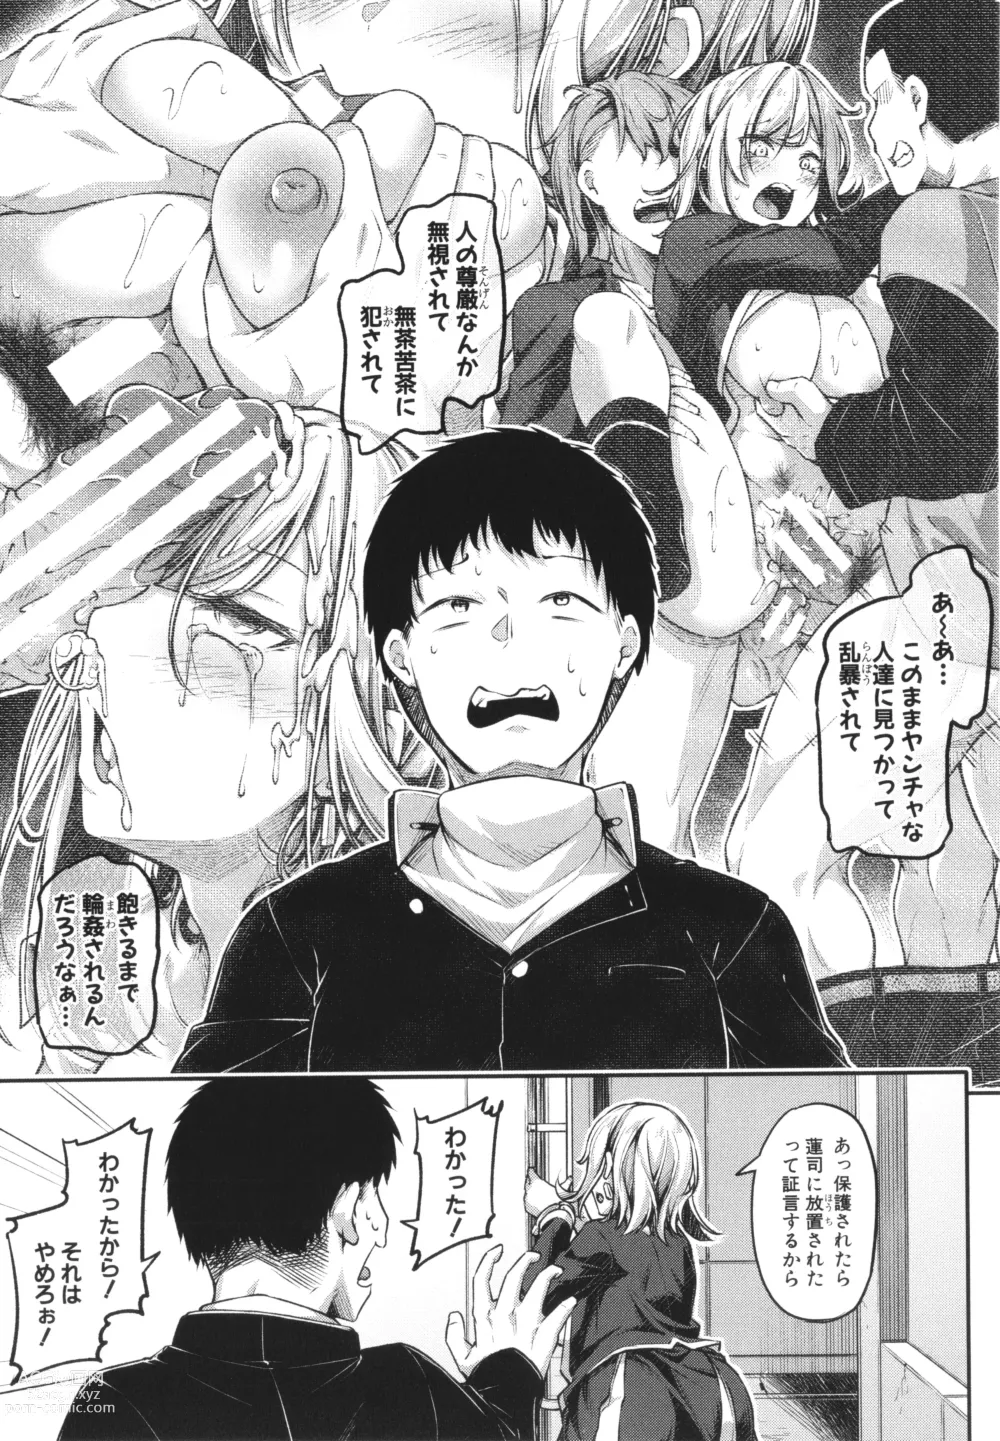 Page 189 of manga Ecchi na Nurse-tachi ga Koshitsu de Koubi Shite Kurerutte Hontou Desuka!?